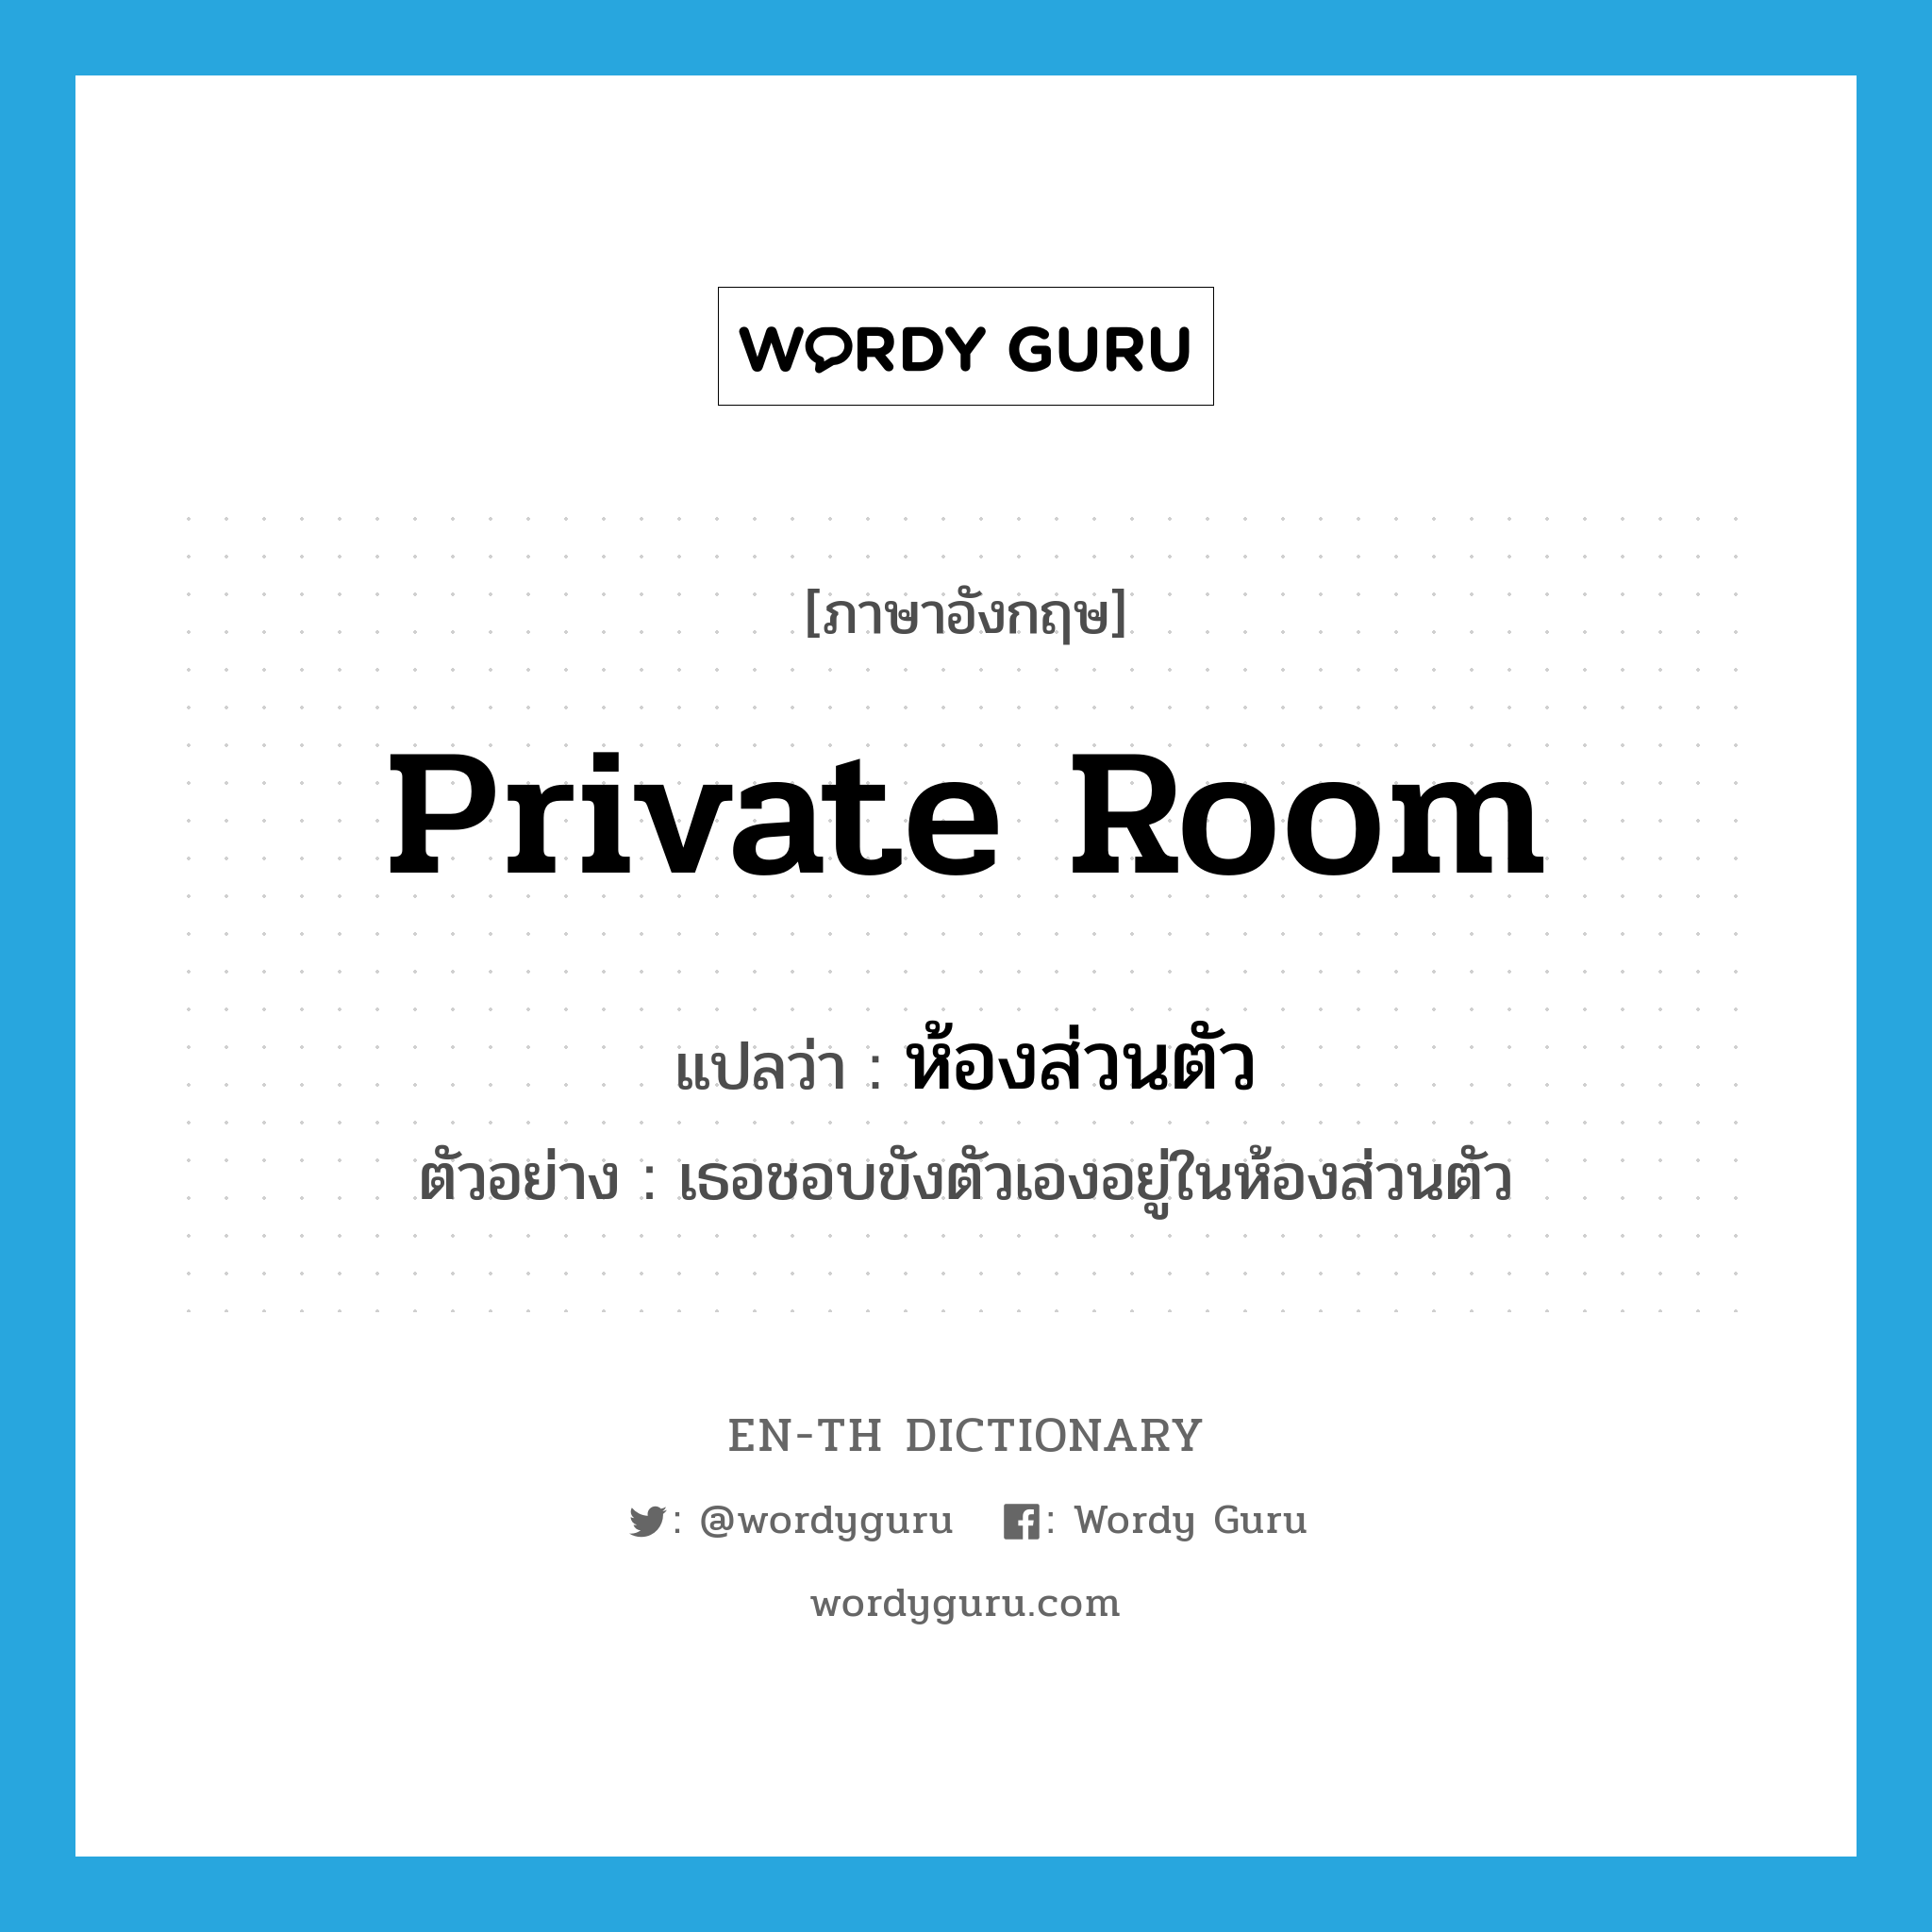 private room แปลว่า?, คำศัพท์ภาษาอังกฤษ private room แปลว่า ห้องส่วนตัว ประเภท N ตัวอย่าง เธอชอบขังตัวเองอยู่ในห้องส่วนตัว หมวด N